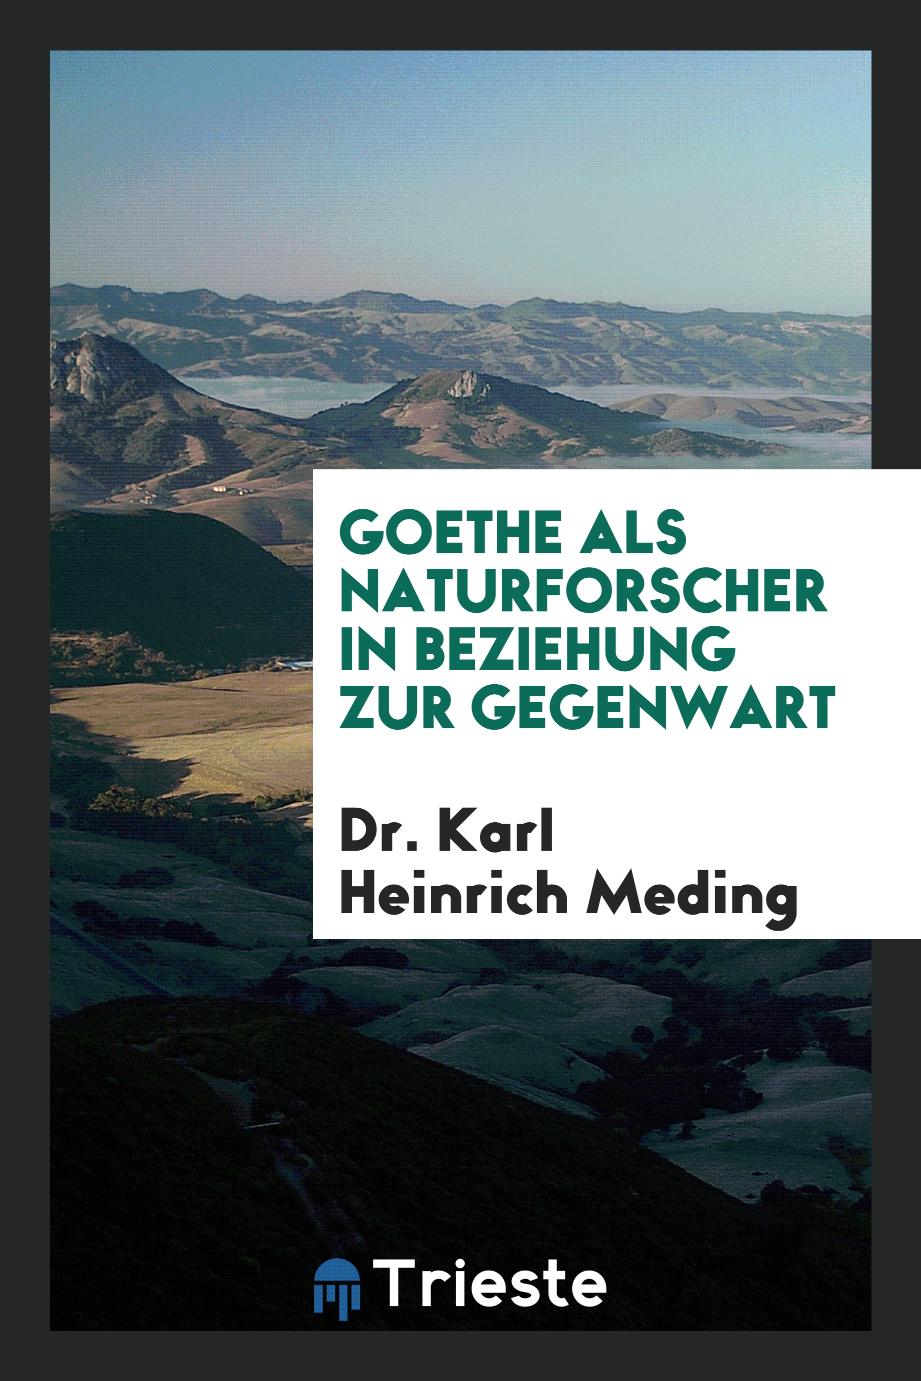 Dr. Karl Heinrich Meding - Goethe als Naturforscher in Beziehung zur Gegenwart